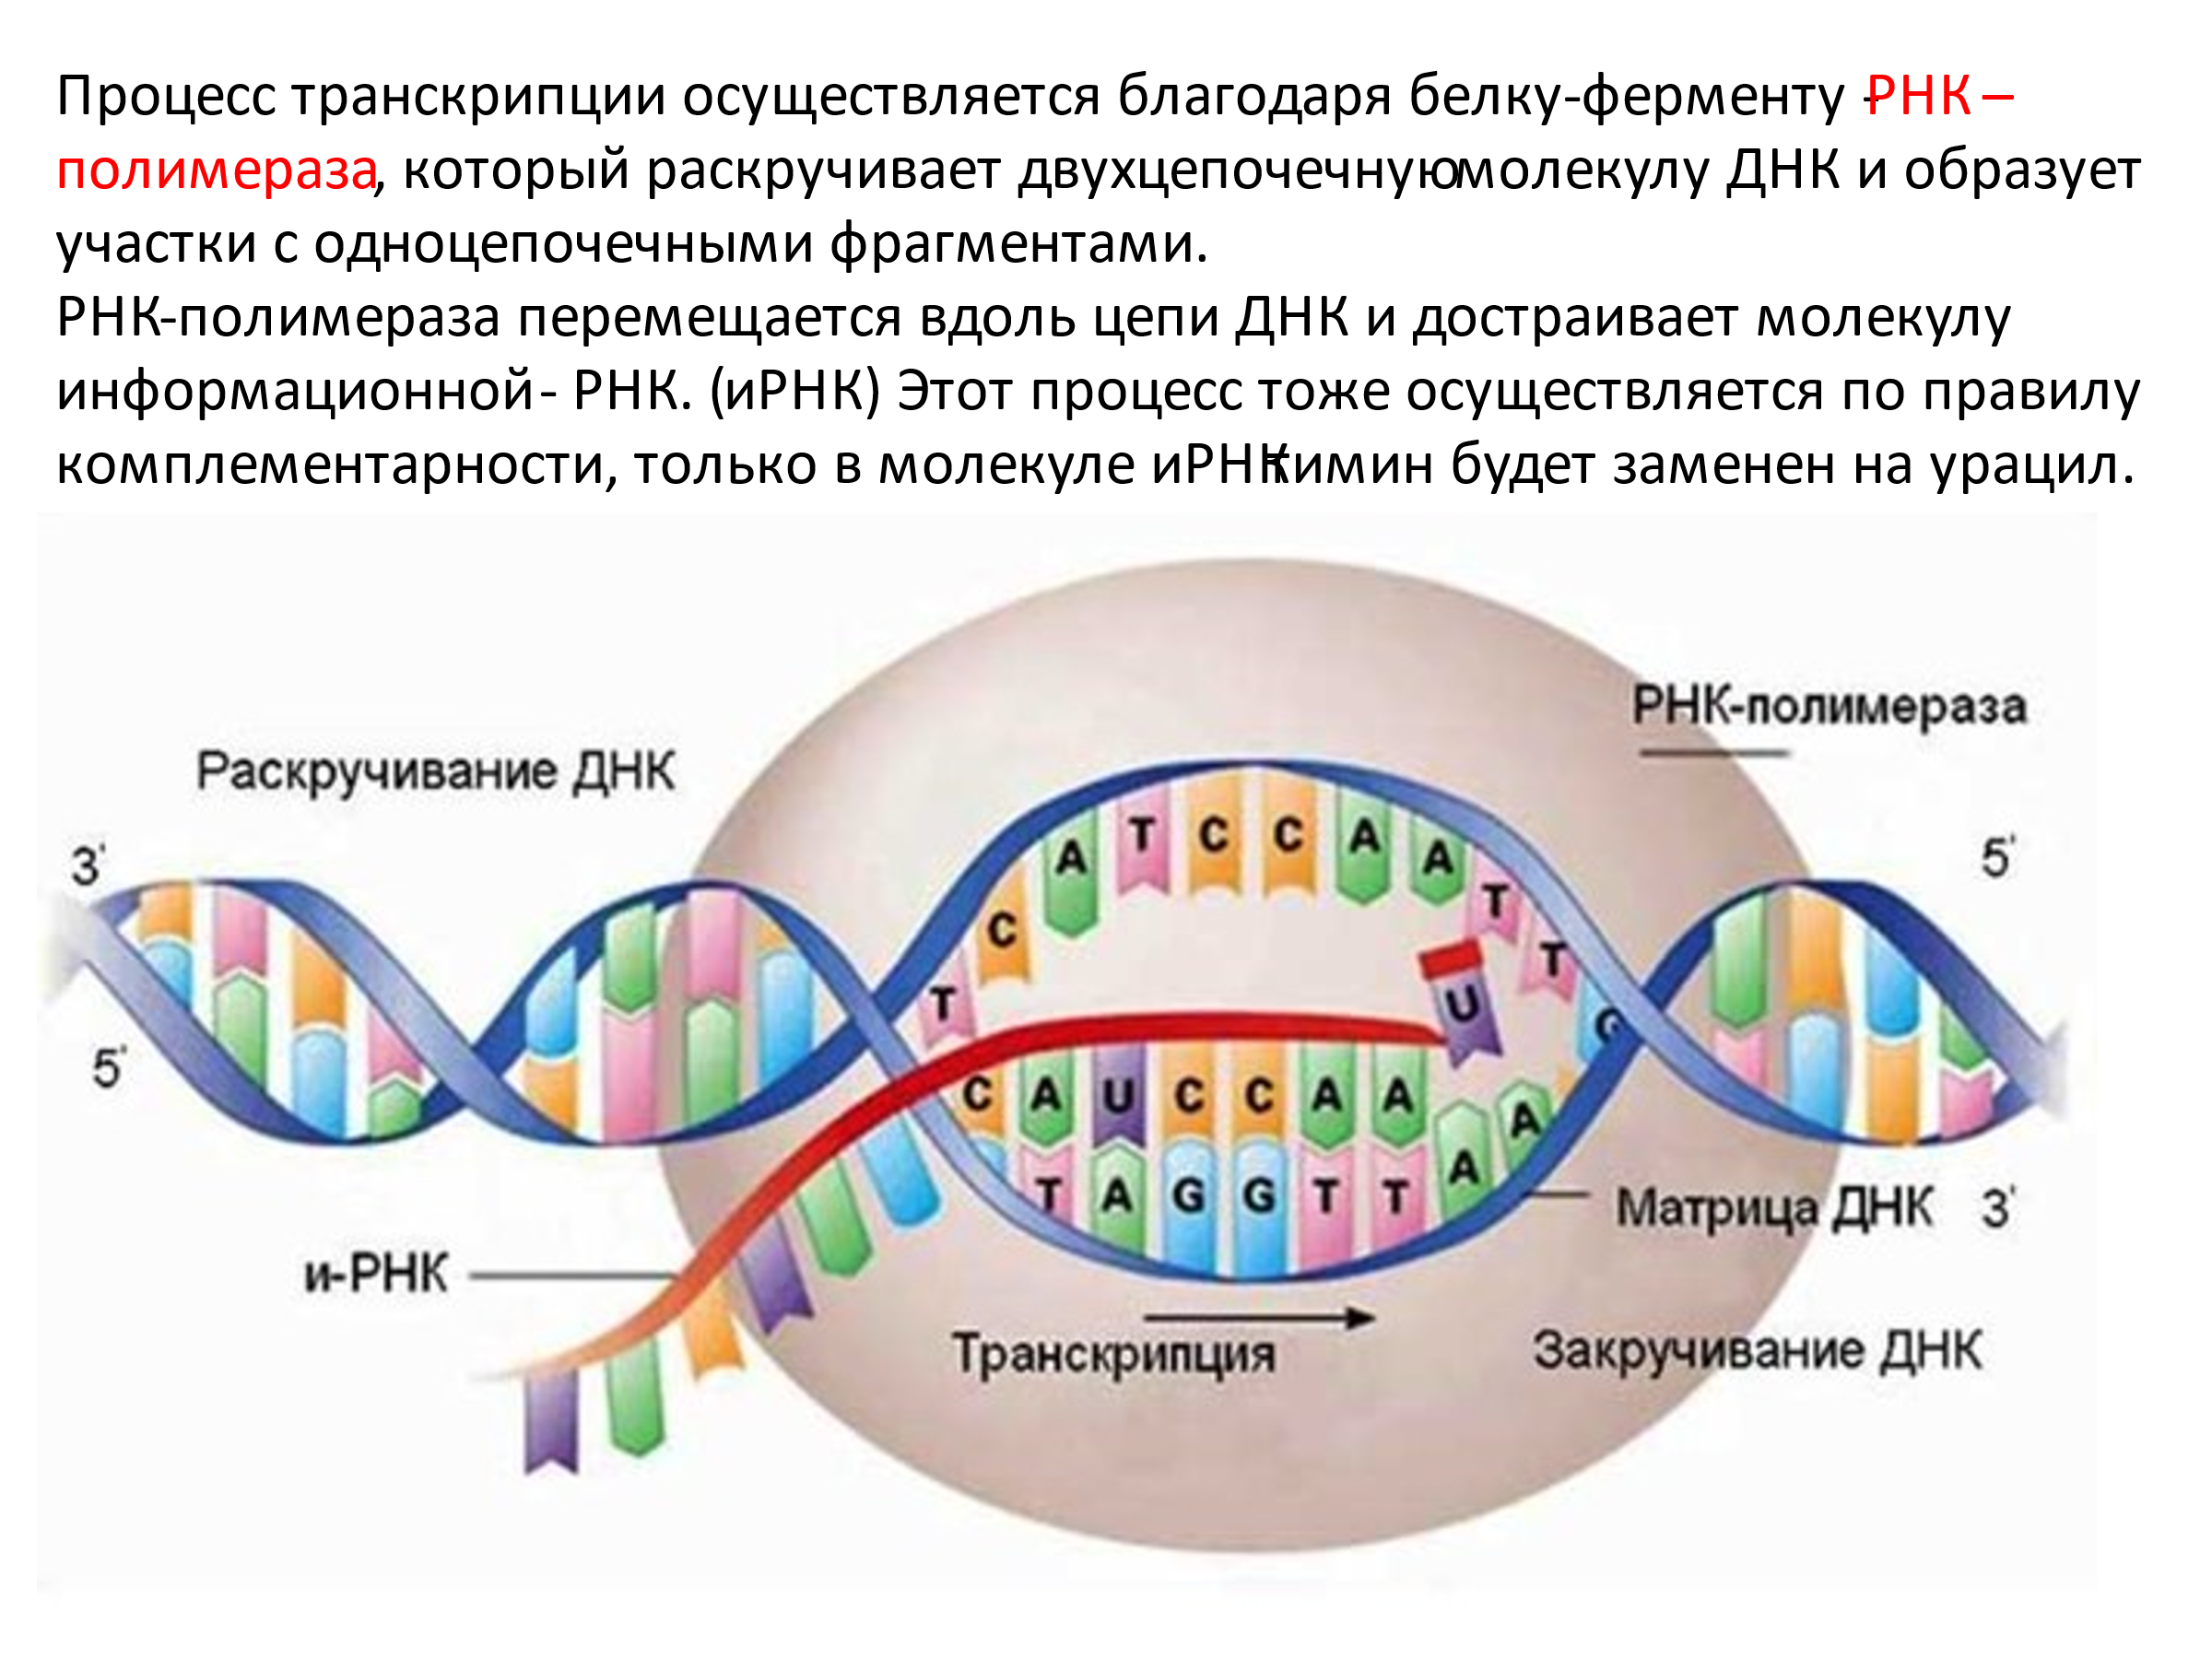 Образование новой днк. Синтез РНК транскрипция. ДНК. Синтез ДНК И РНК. Схема образования ИРНК на матрице ДНК.